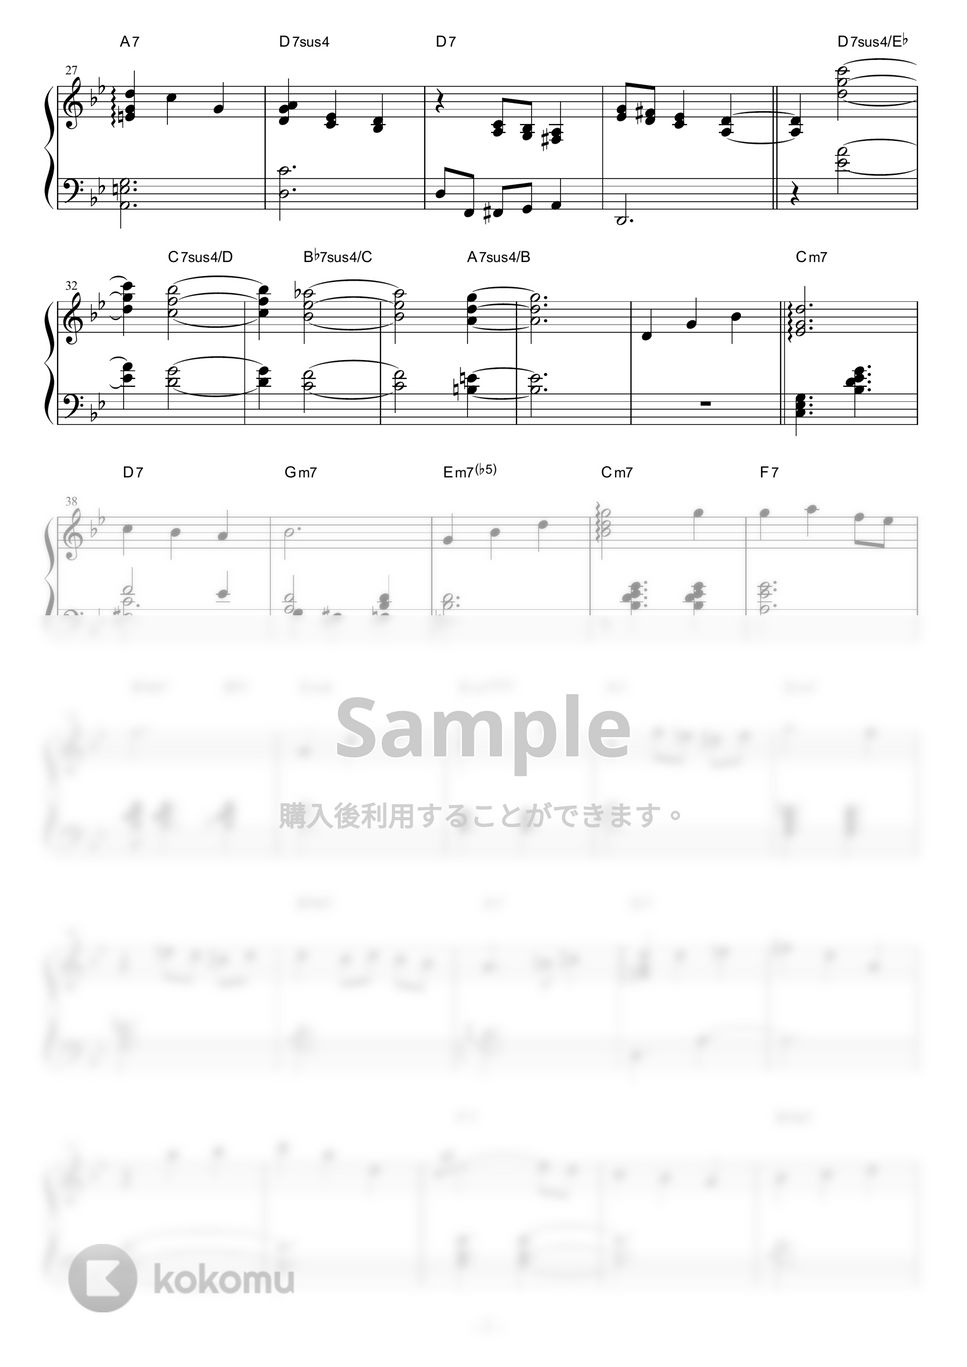 久石譲 - 人生のメリーゴーランド (Jazz ver.) by piano*score